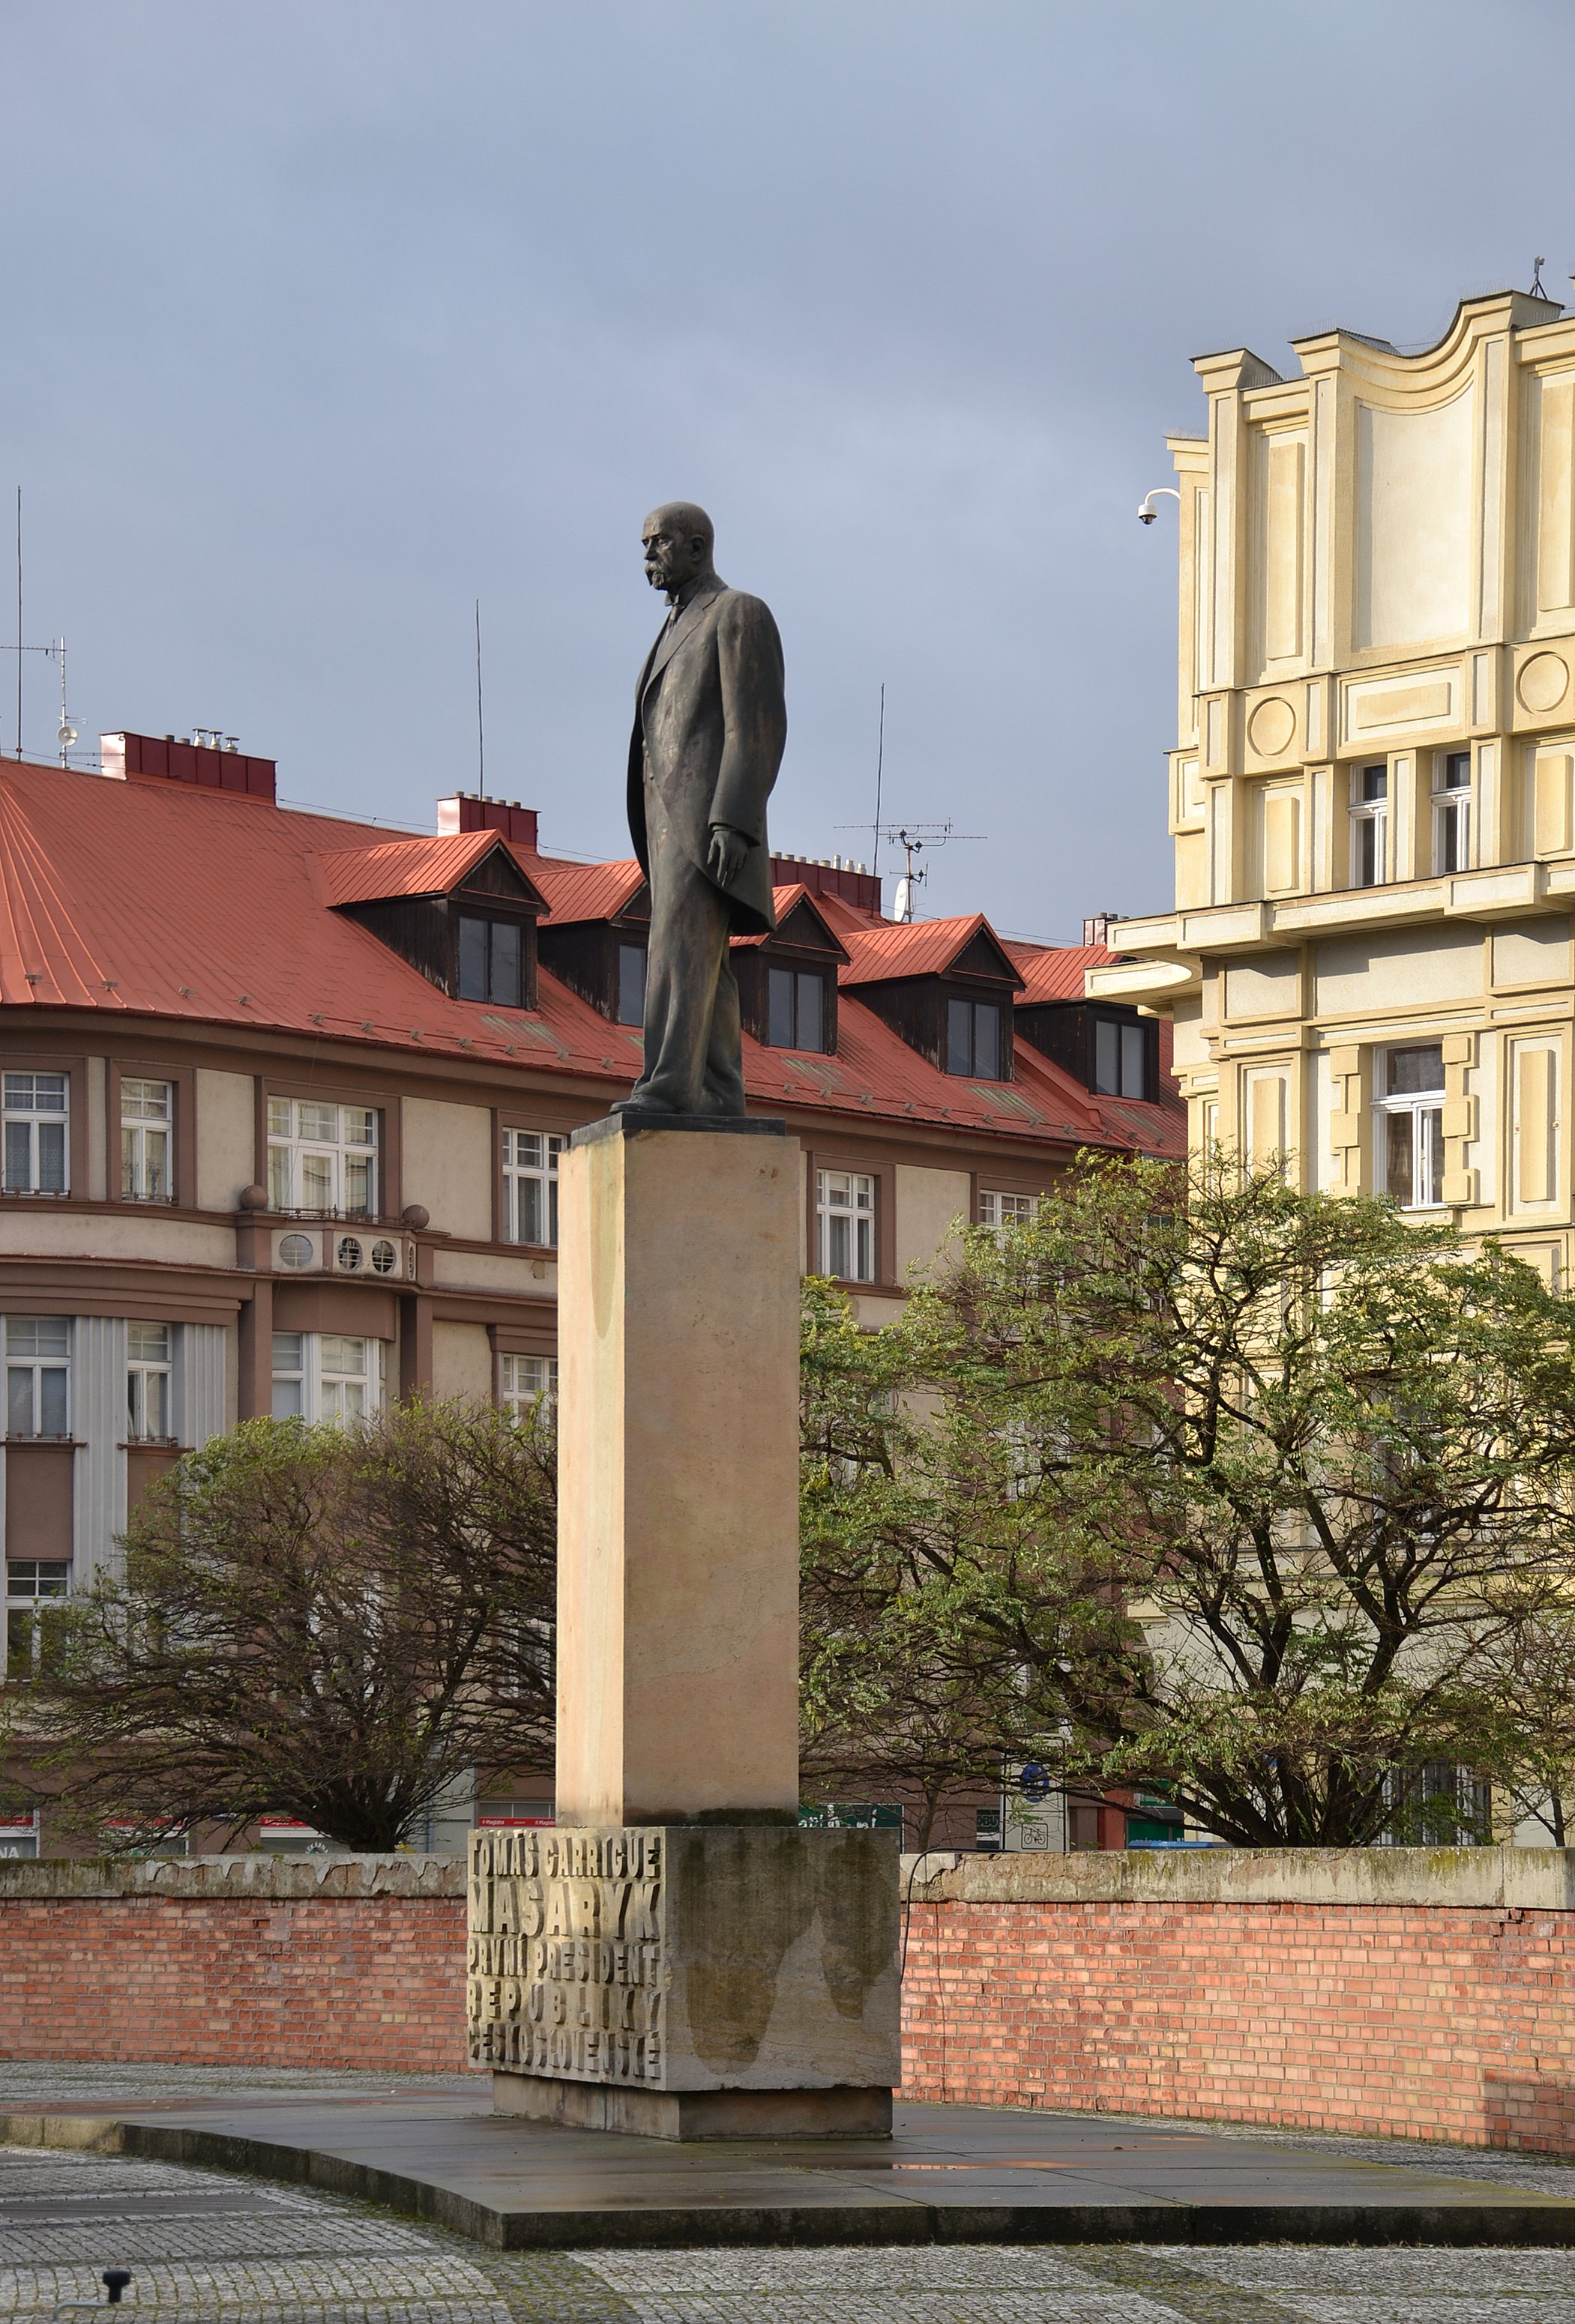 Hradec Králové (Königgrätz) - T. Masaryk statue